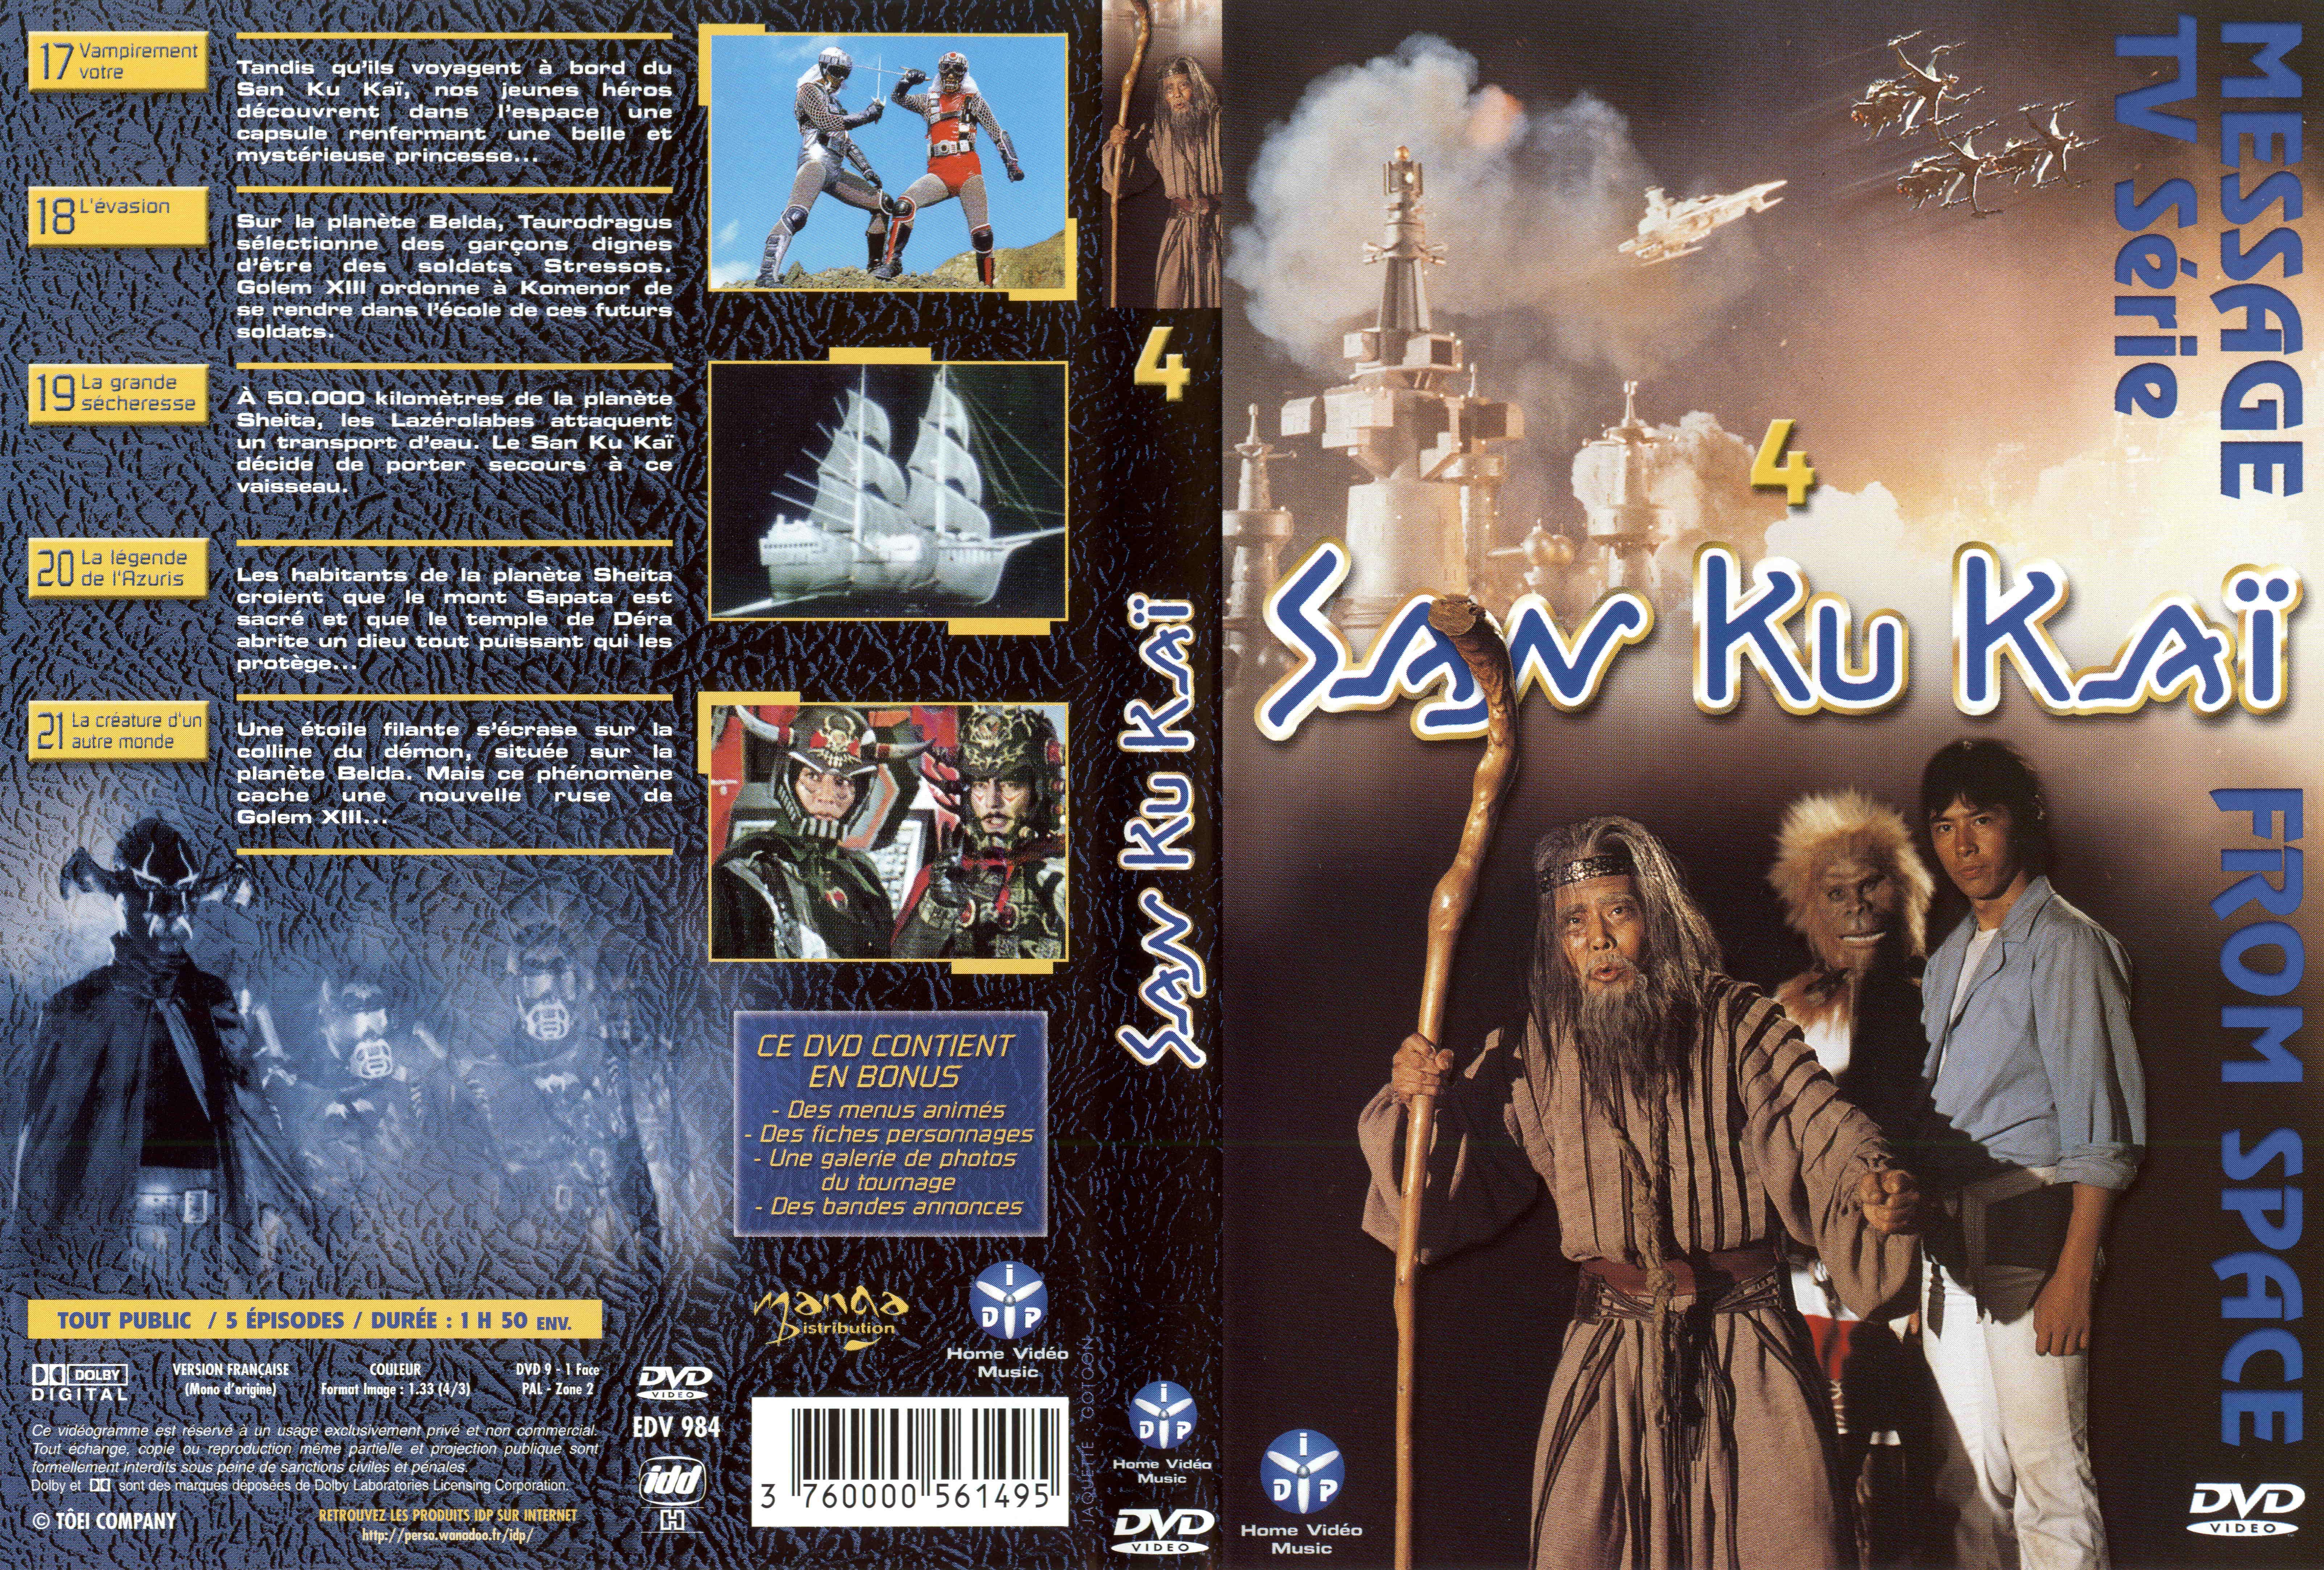 Jaquette DVD San ku kai vol 4